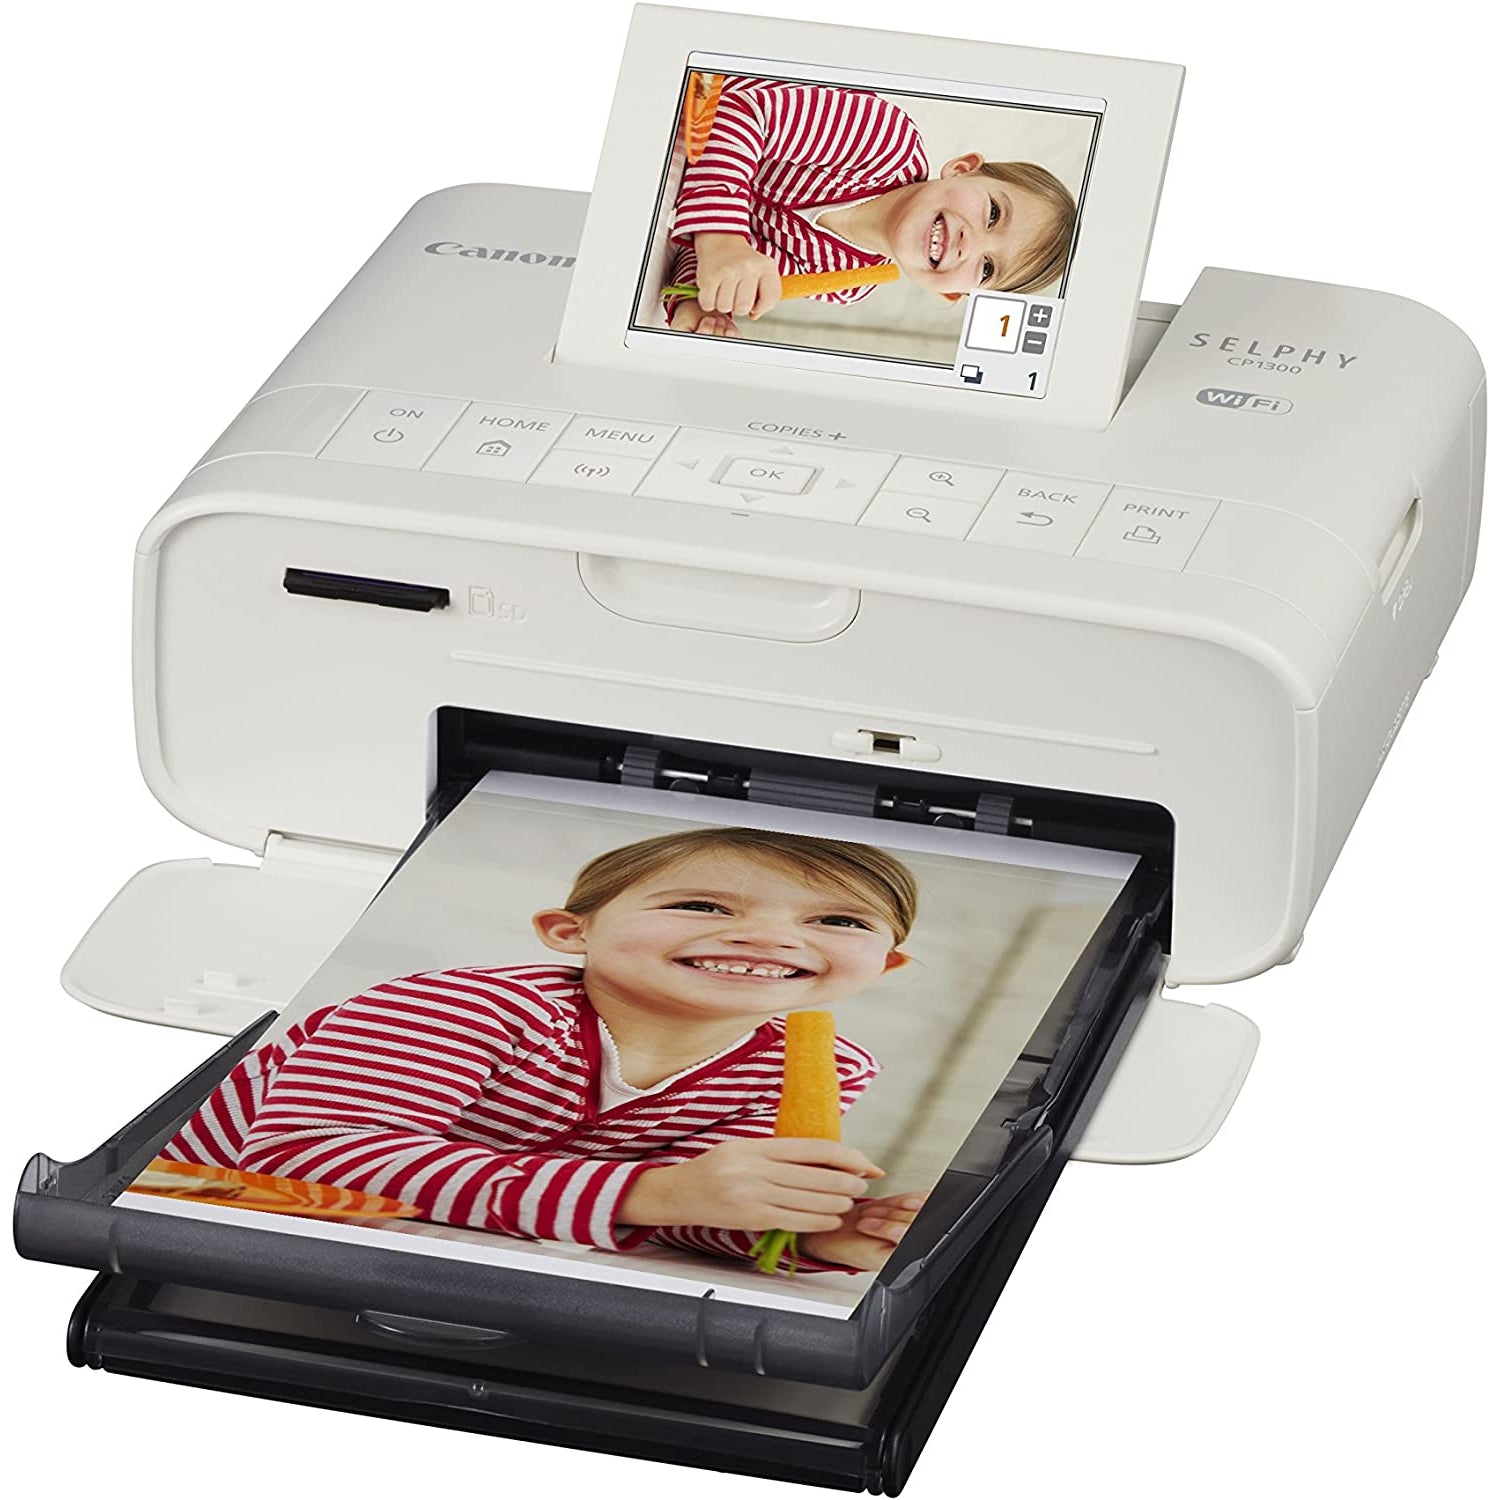 Canon Selphy CP1300 Compact Photo Printer